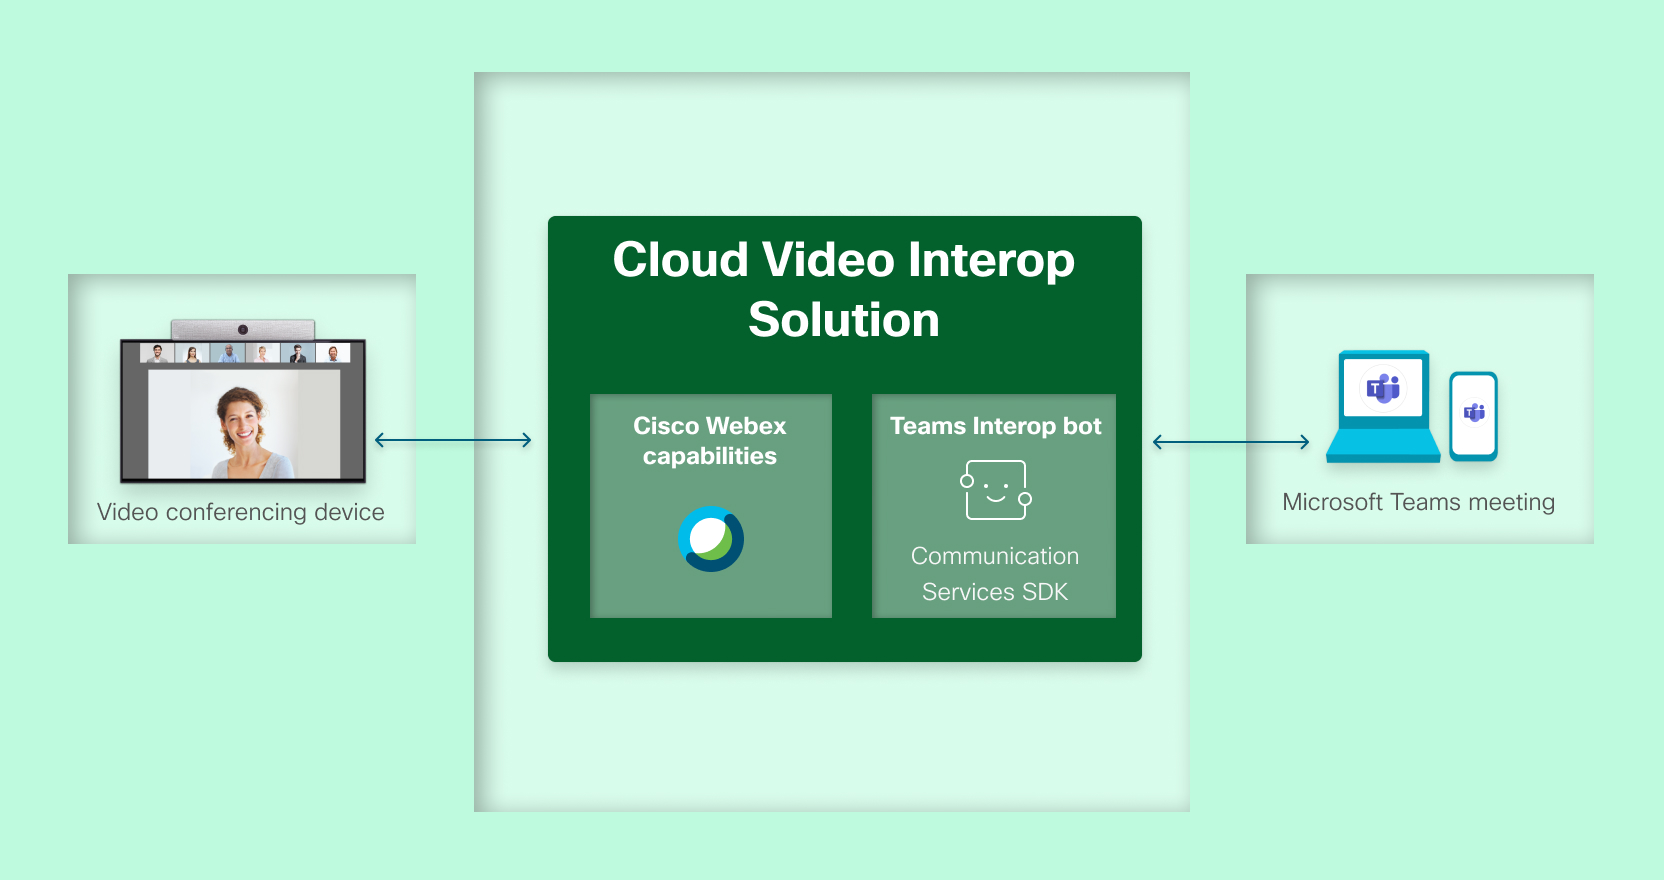 CVI Architecture kép alapján https://docs.microsoft.com/en-us/microsoftteams/cloud-video-interop